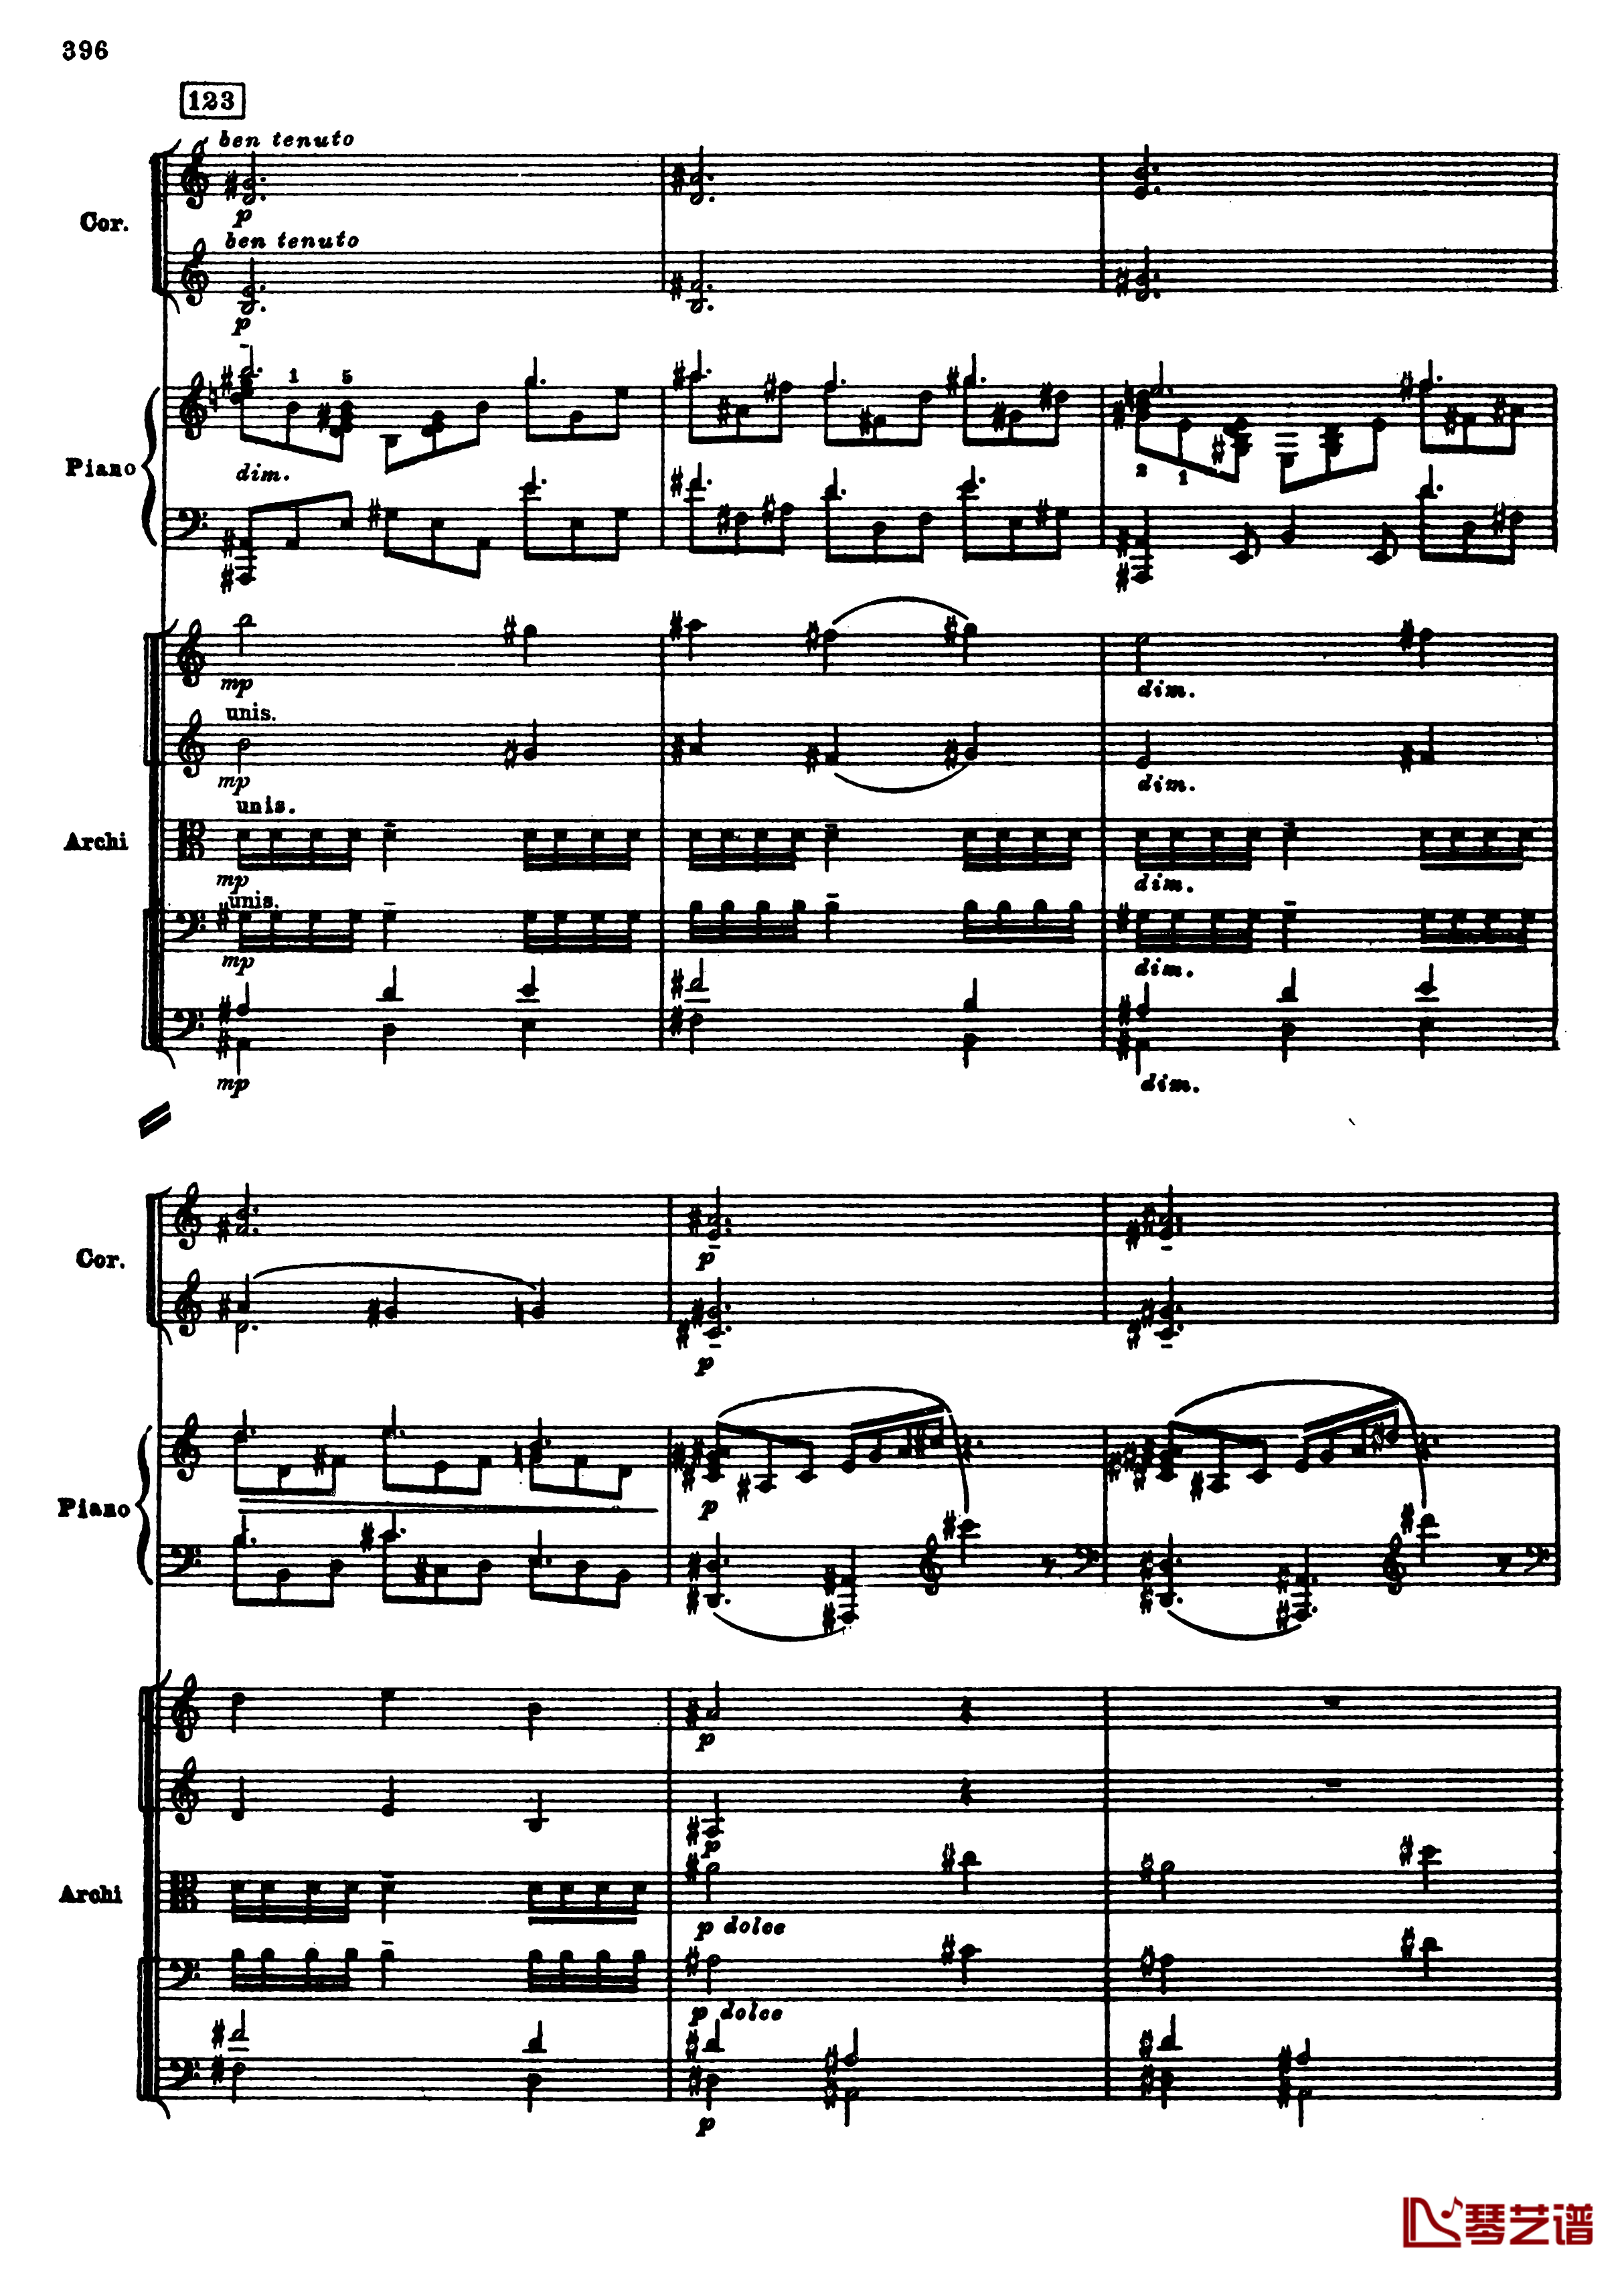 普罗科菲耶夫第三钢琴协奏曲钢琴谱-总谱-普罗科非耶夫128